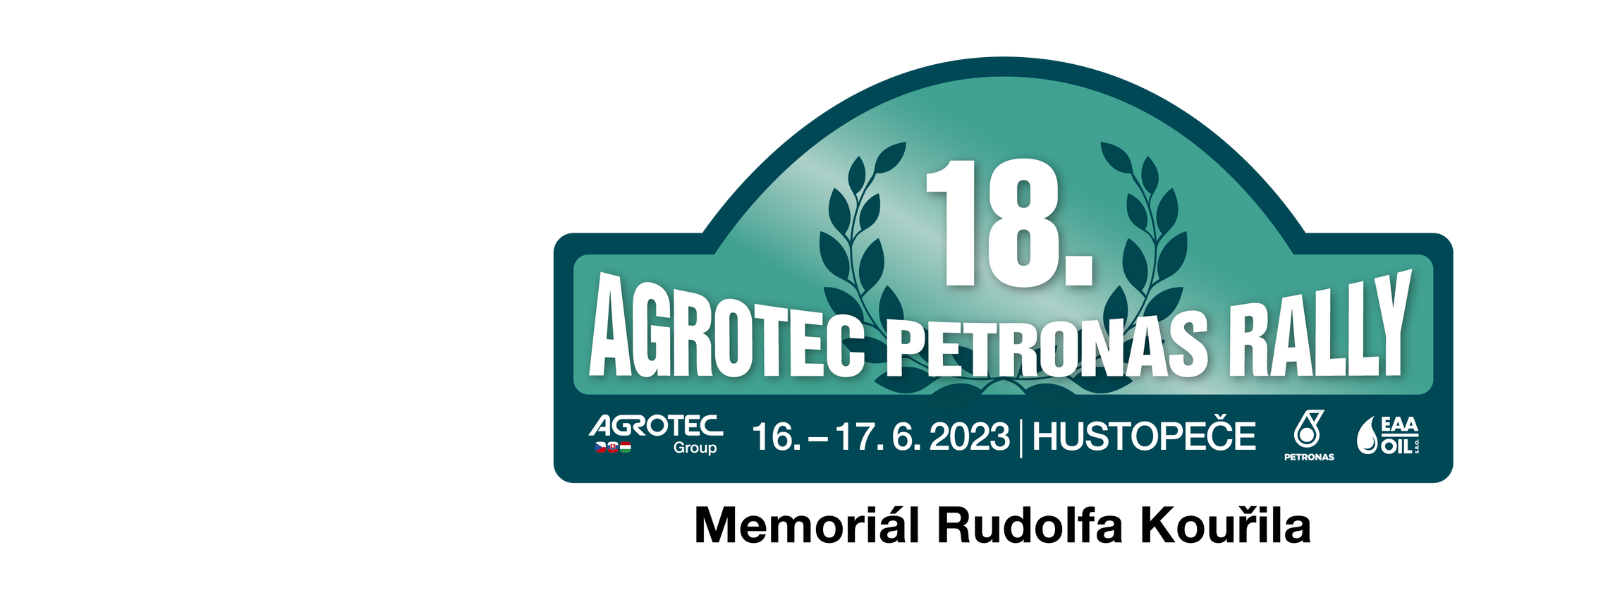 AGROTEC PETRONAS Rally 2023 startuje, bude to jízda! 